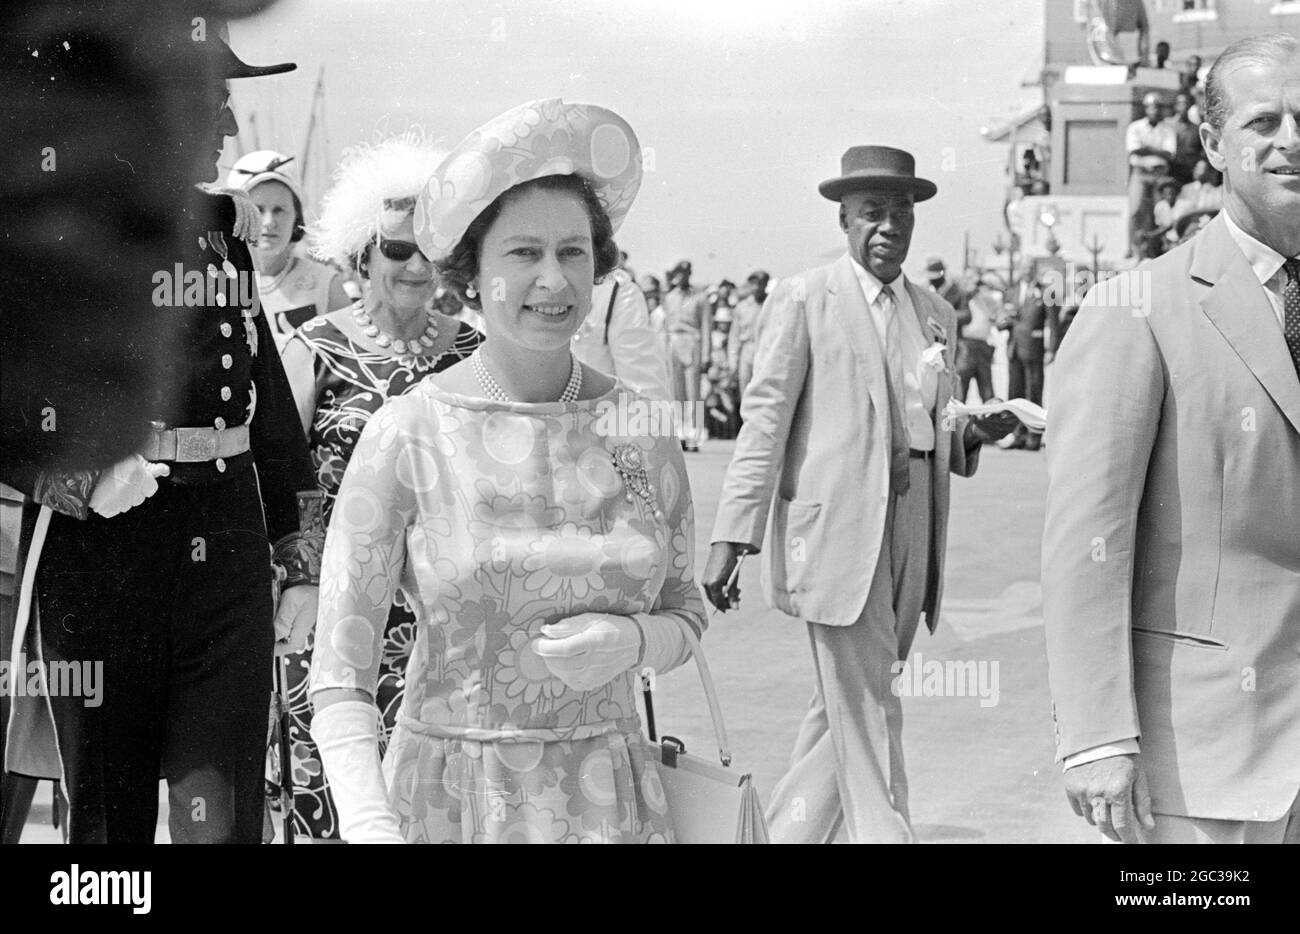 Barbados: Großbritannien Königin Elizabeth II. Und Prinz Philip Duke von Edinburgh, die derzeit auf einer fünfwöchigen Reise durch die Karibik unterwegs sind, werden nach ihrer Ankunft in Barbados am 14. Februar durch die Straßen von Barbados abgebildet. Beachten Sie die Statue von Nelson im Hintergrund, auf dem Weg zum Senatgebäude. 16. Februar 1966 Stockfoto